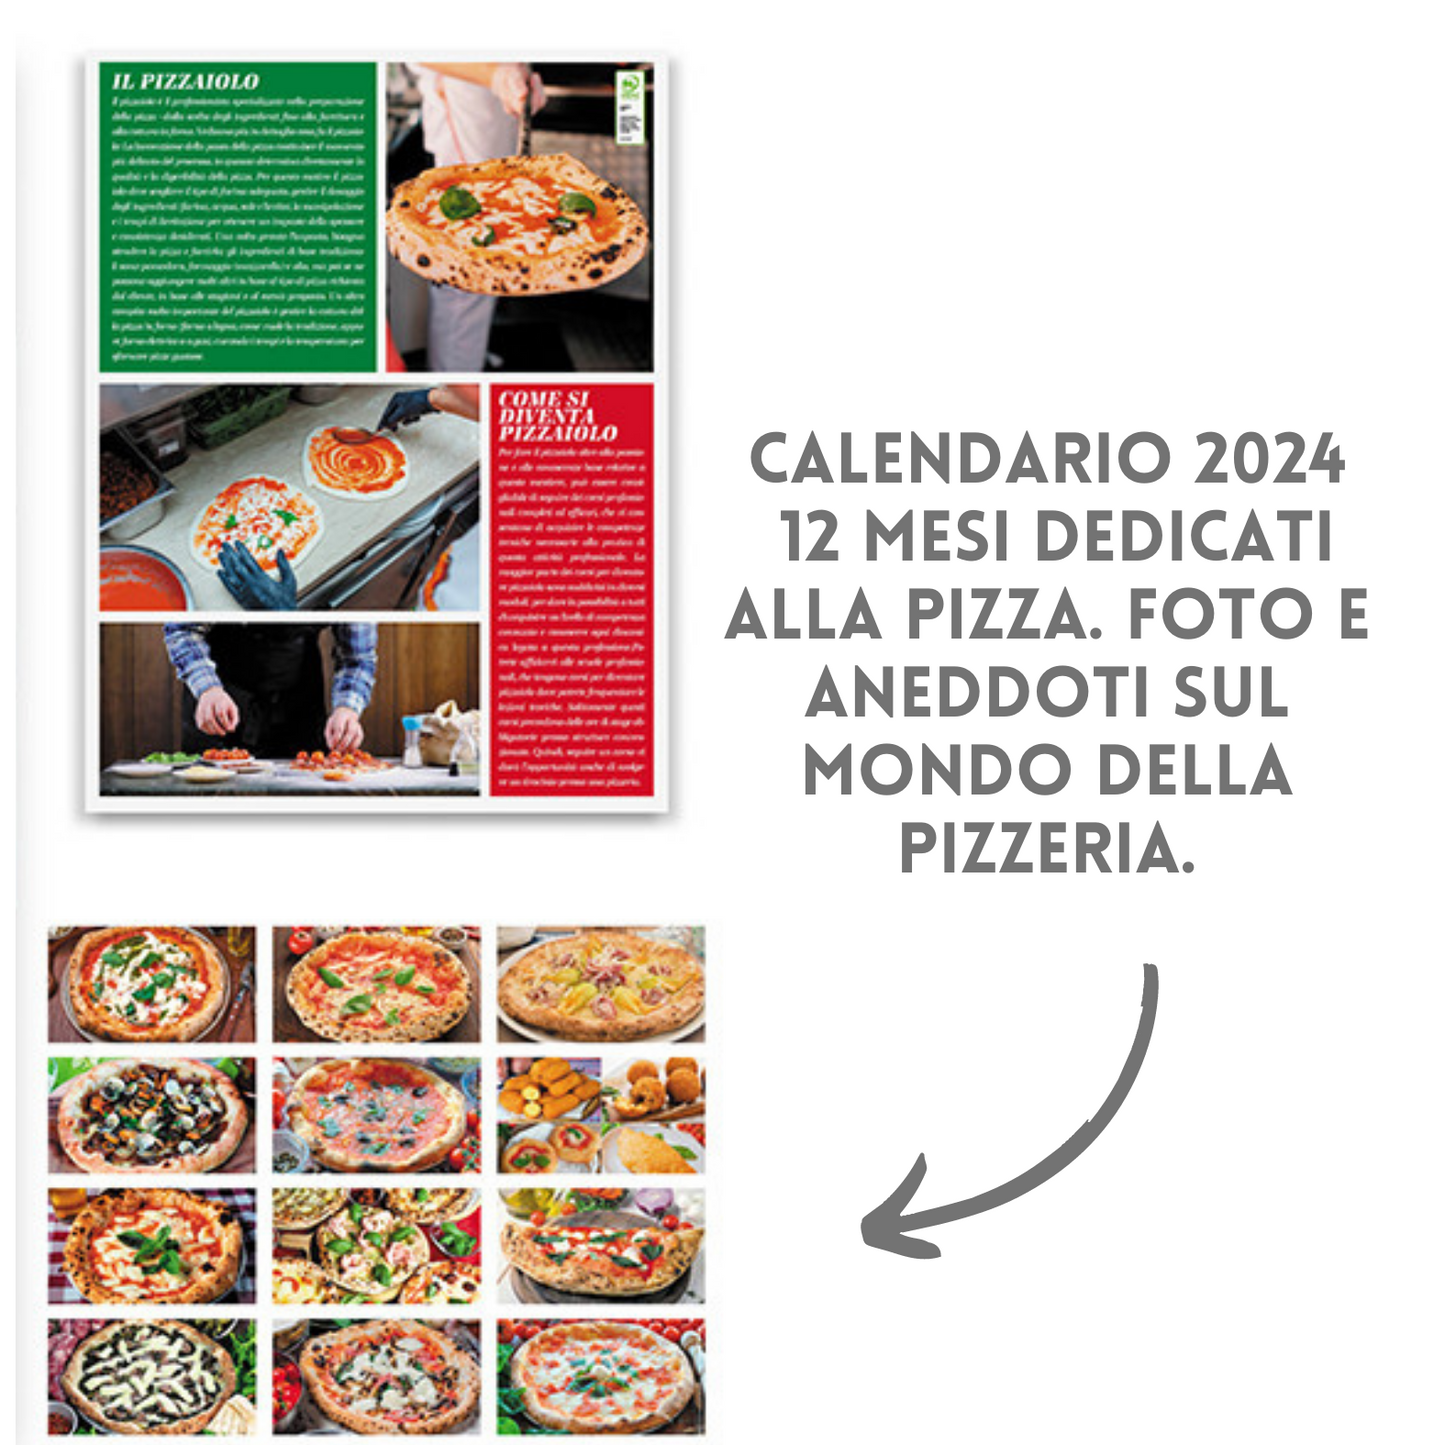 Calendari personalizzati 2024 illustrati PA136